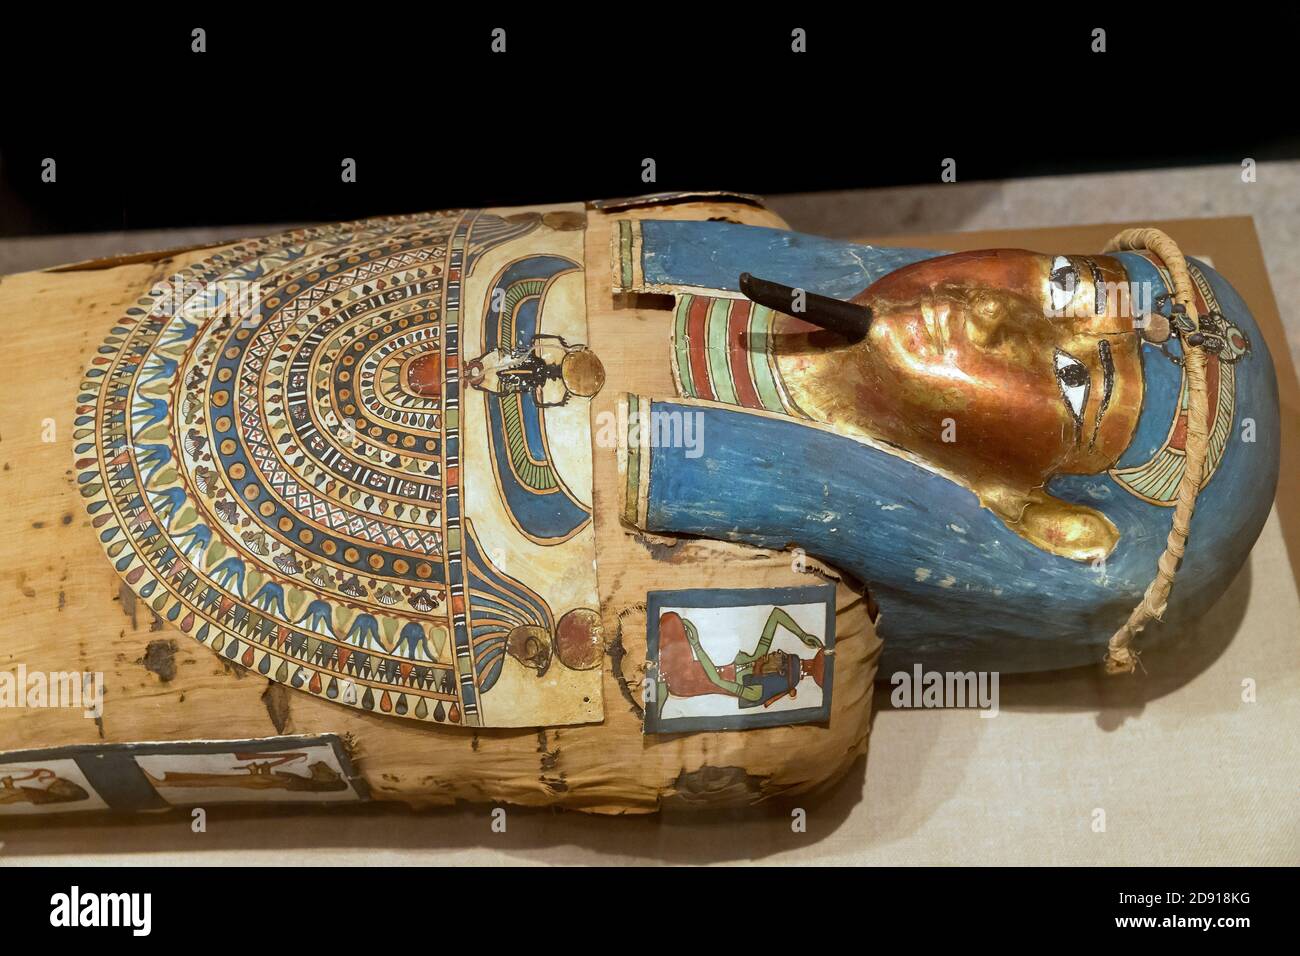 La maman et le cercueil de l'Irtirutja, période ptolémaïque, Metropolitan Museum of Art, Manhattan, New York City, USA, Amérique du Nord Banque D'Images